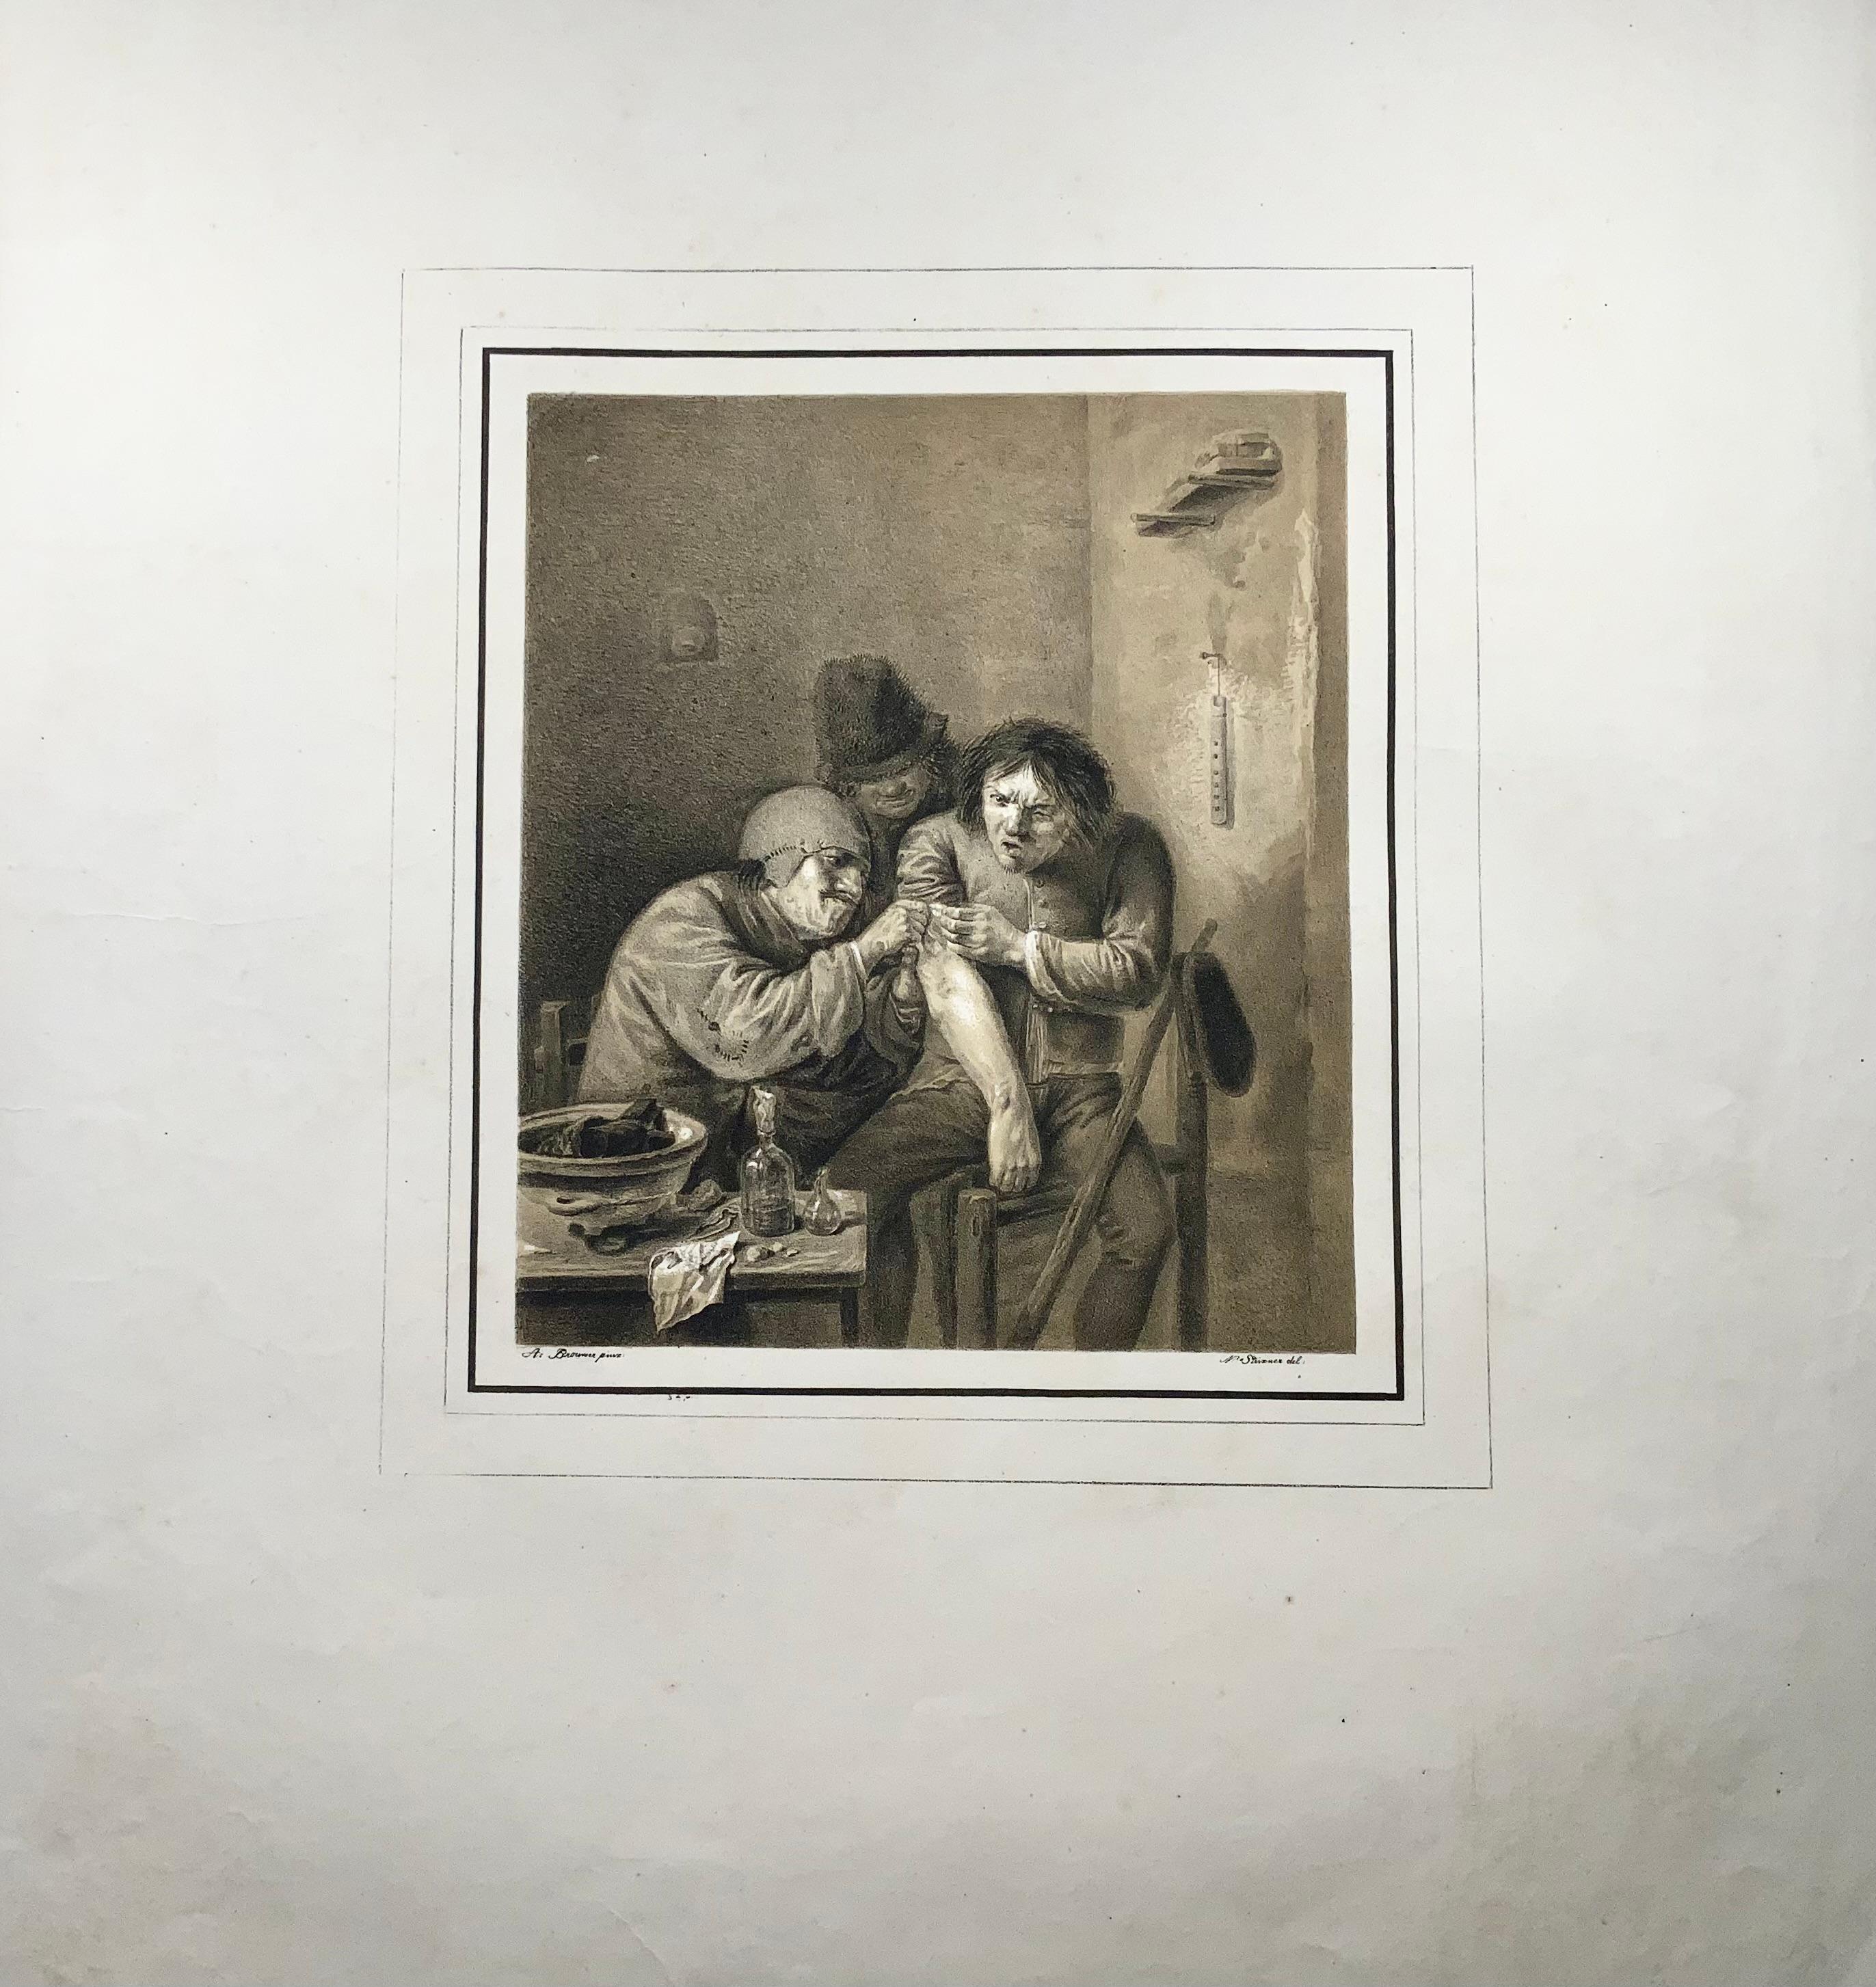 A. Brouwer pinx. N. Strixner del.

Dorfchirurg (Das Gefühl)

Ein Chirurg verbindet die Wunde eines grimassierenden Patienten.

61 x 45 cm; Bild: 29,3 x 26,3 cm

Veröffentlicht um 1810

Steinlithographie mit getöntem Hintergrund.

Referenz: Wellcome